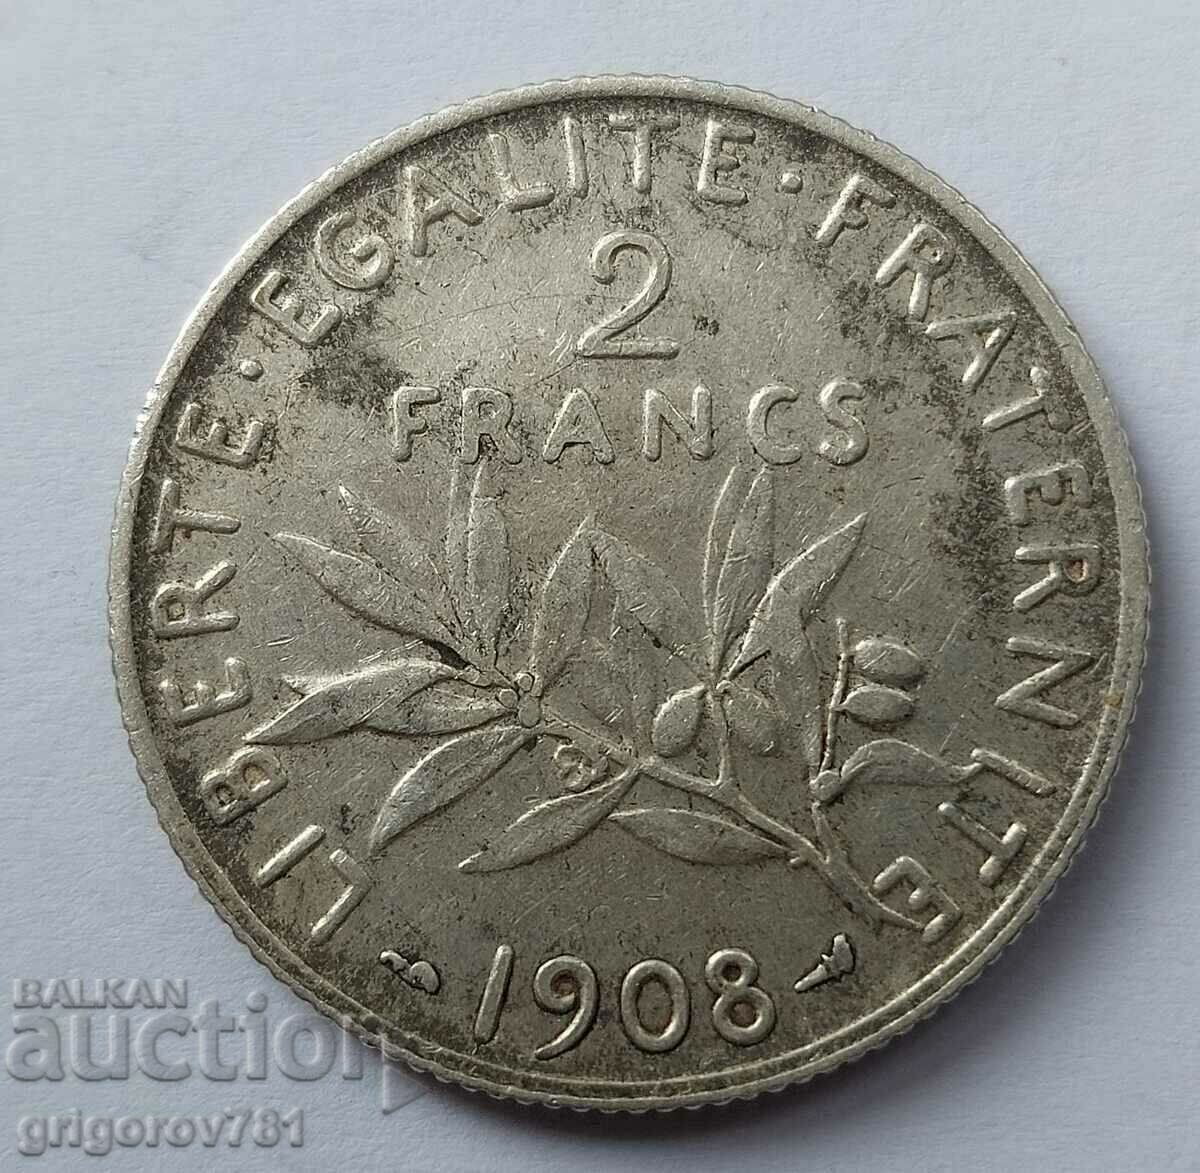 Ασημένιο 2 φράγκα Γαλλία 1908 - ασημένιο νόμισμα №17